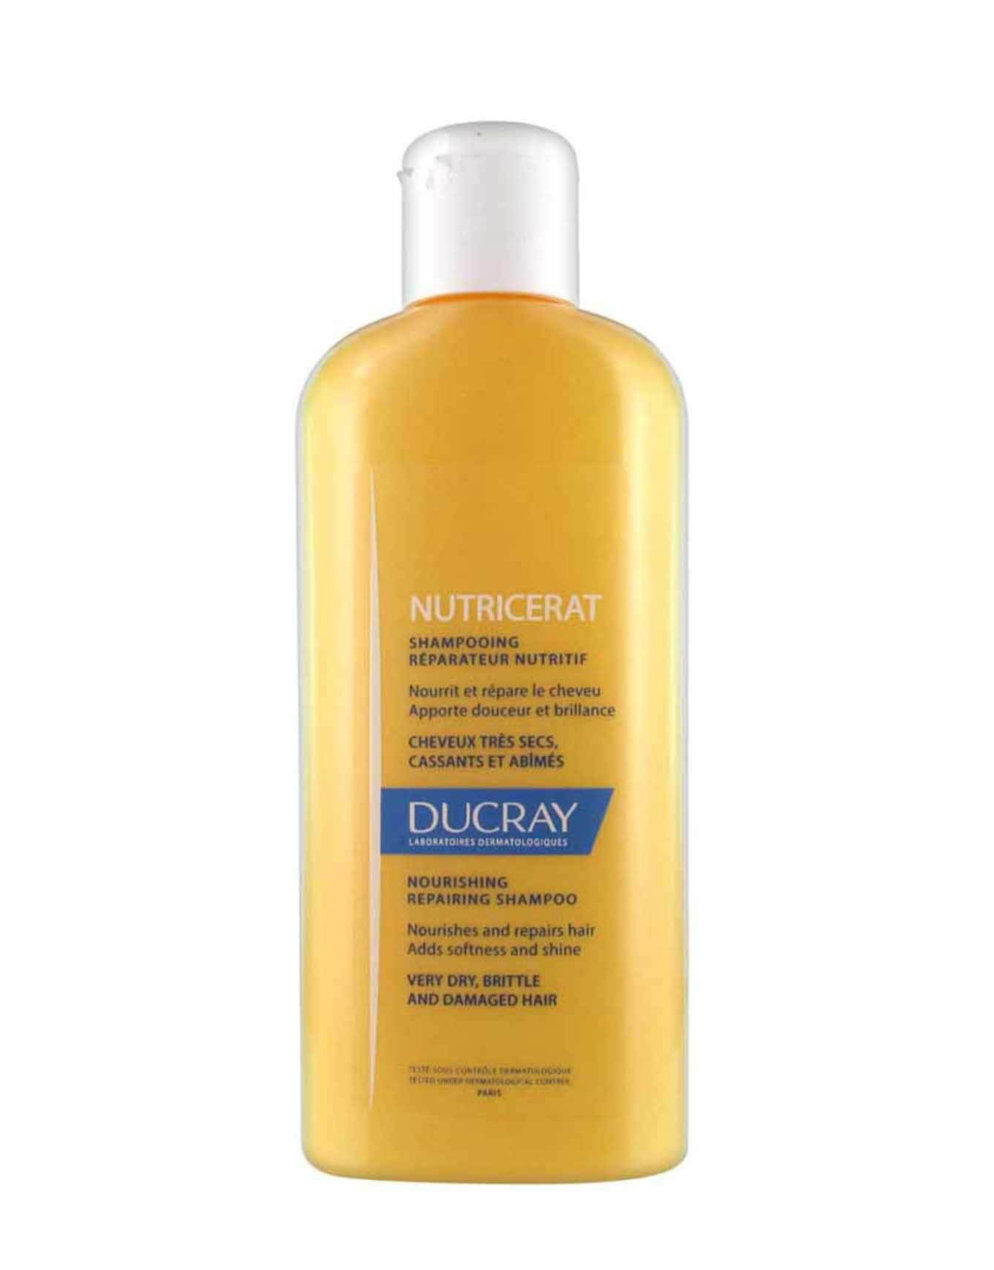 DUCRAY Nutricerat Shampoo 200ml